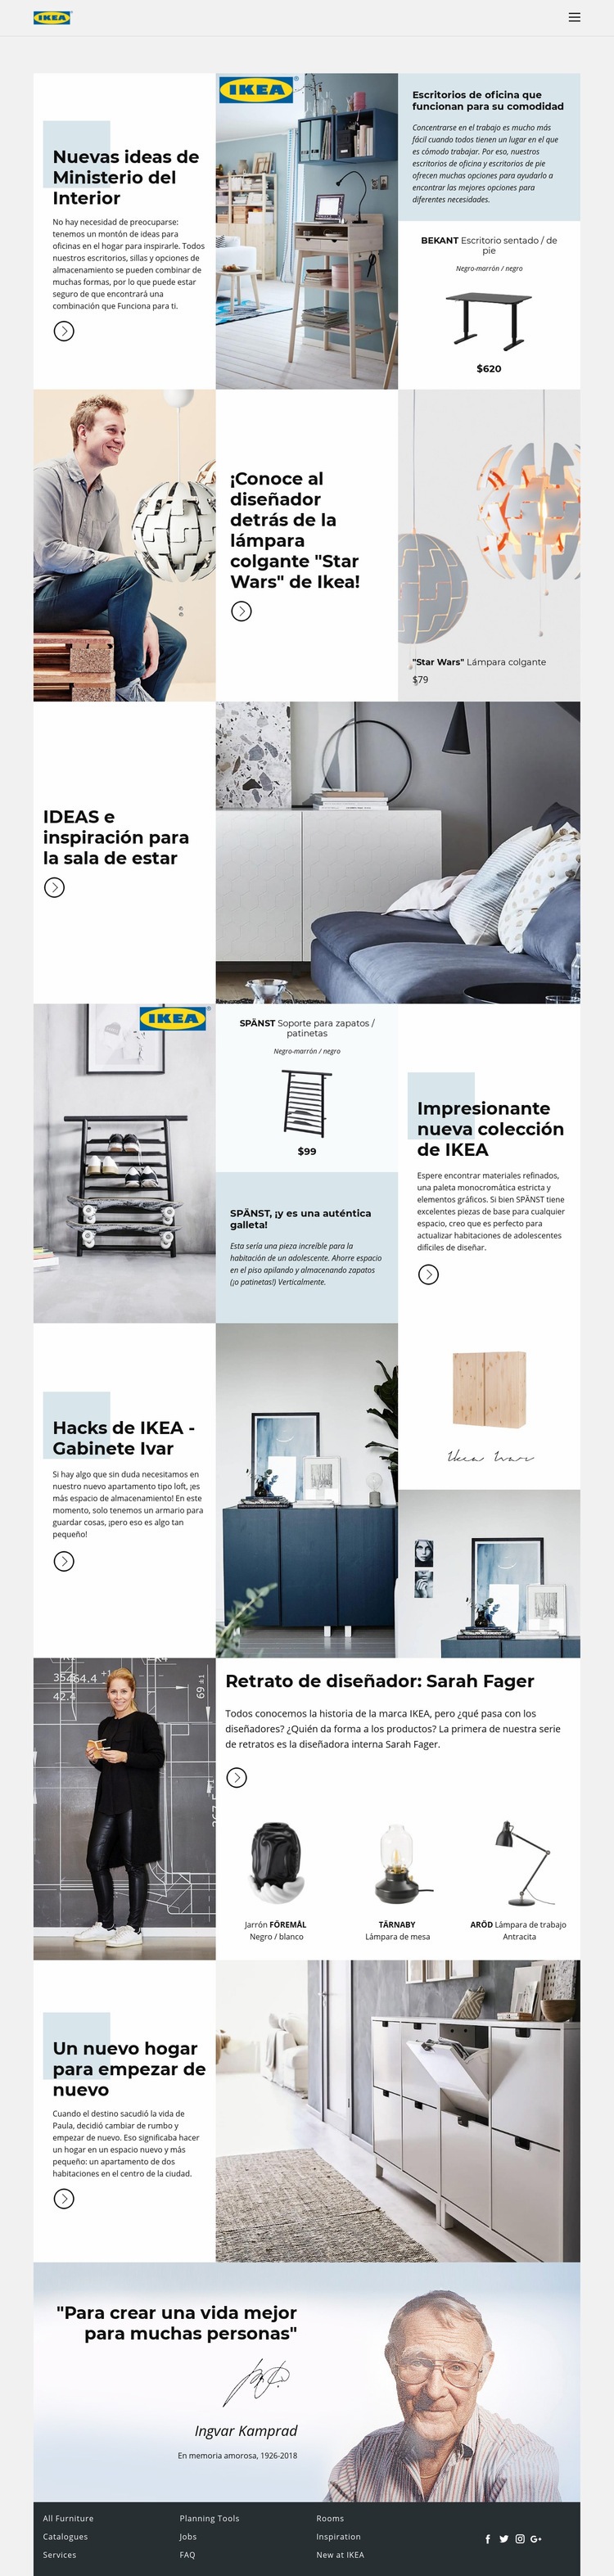 Inspiración de IKEA Creador de sitios web HTML